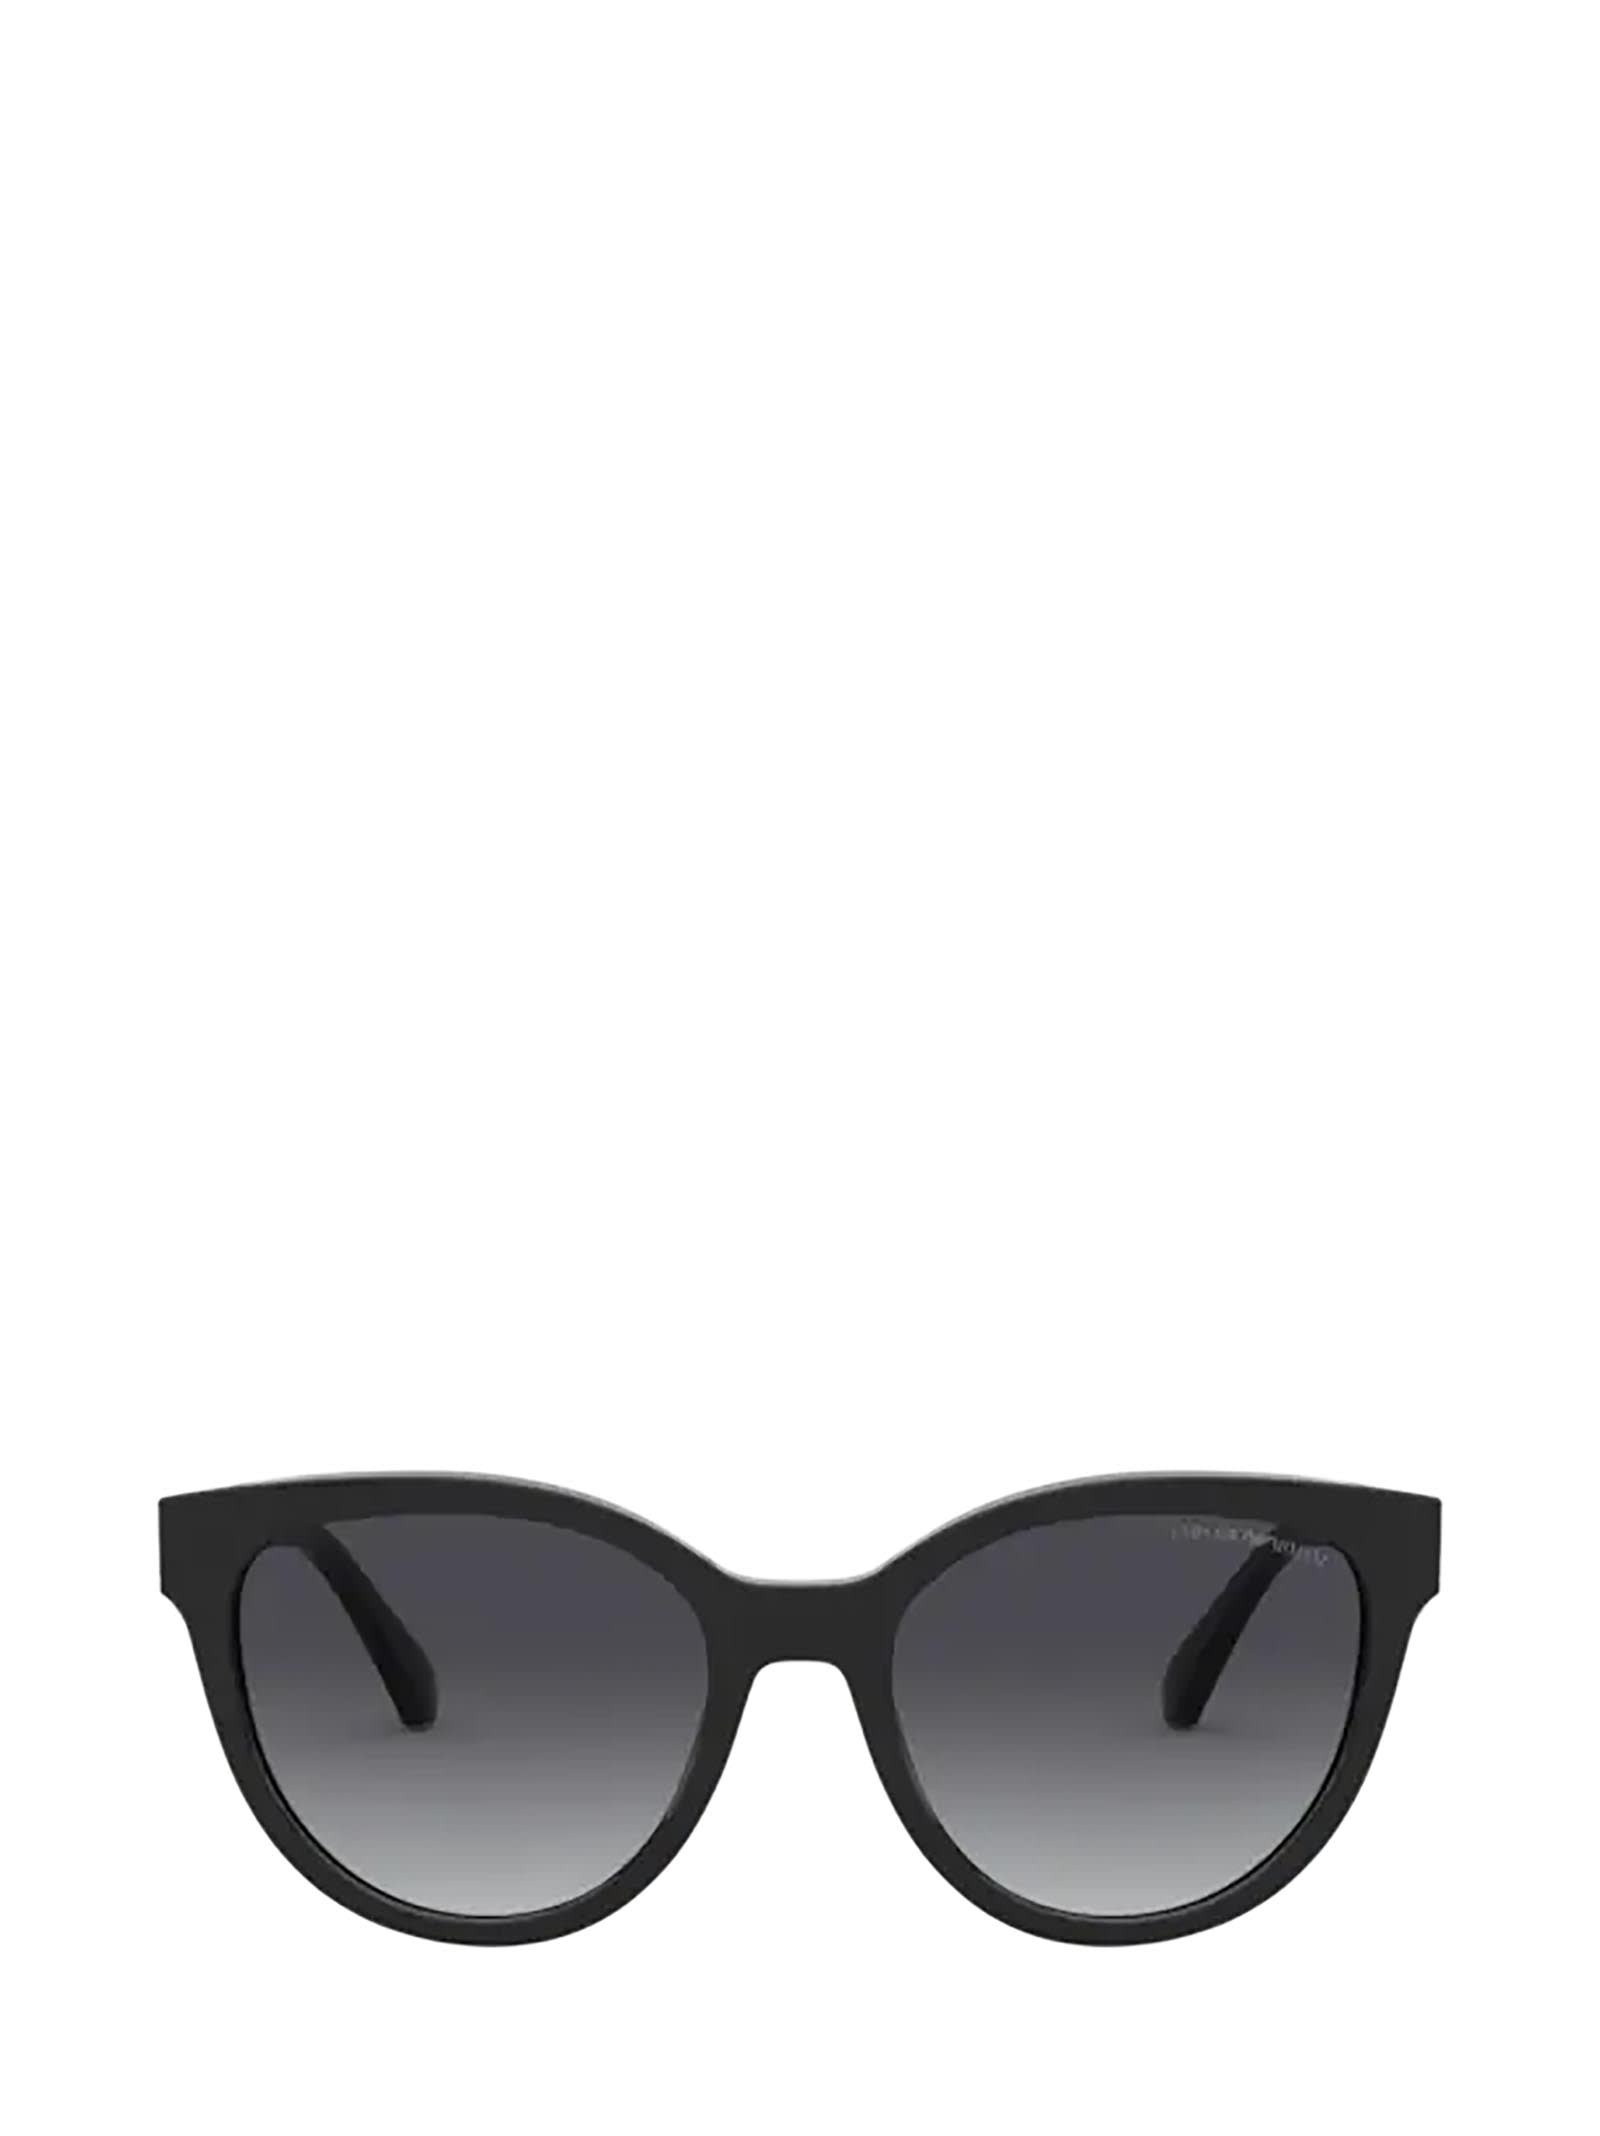 Emporio Armani Emporio Armani Ea4140 Shiny Black Sunglasses